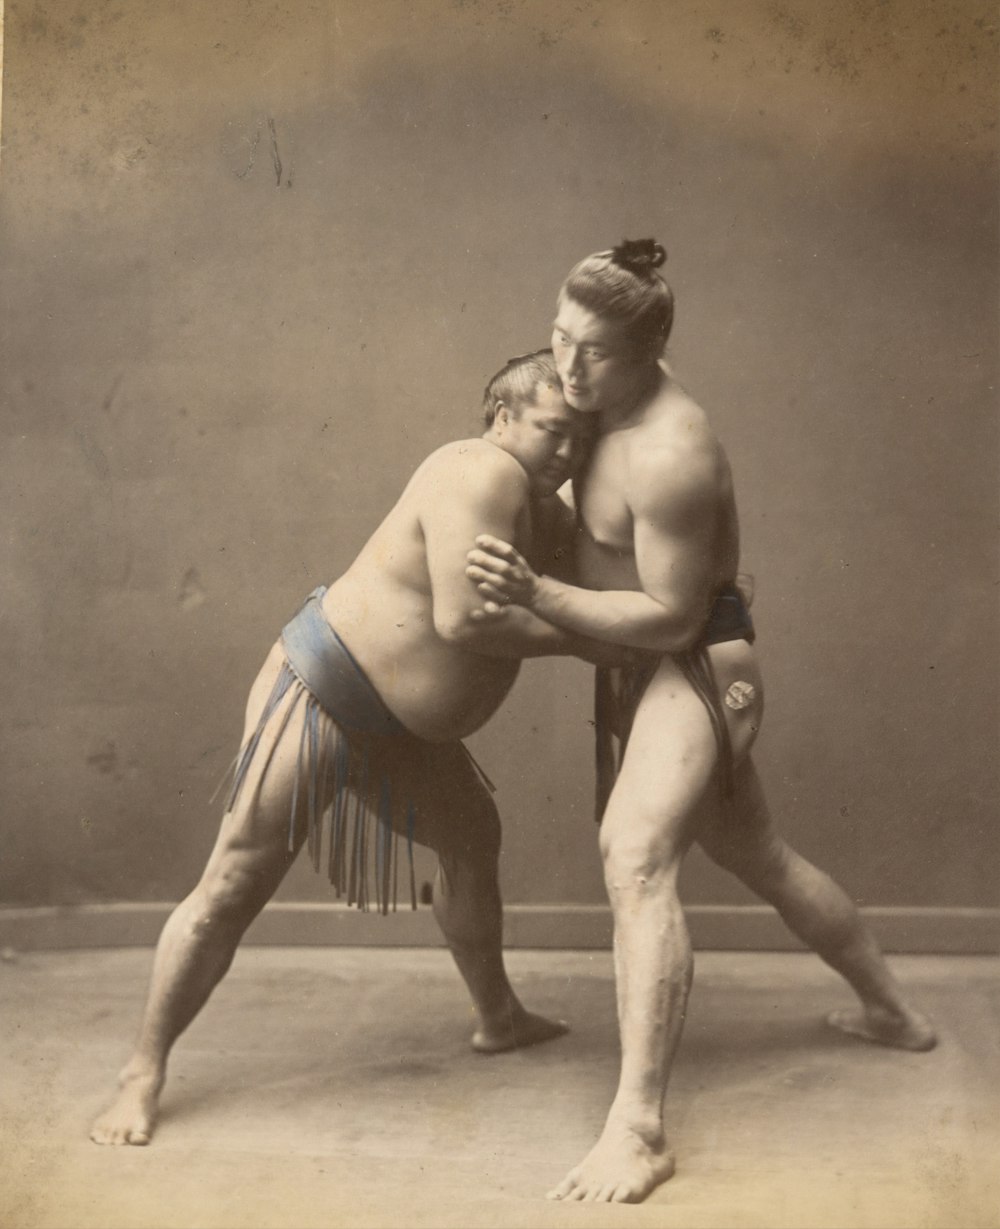 Image historique des lutteurs de sumo en 1870